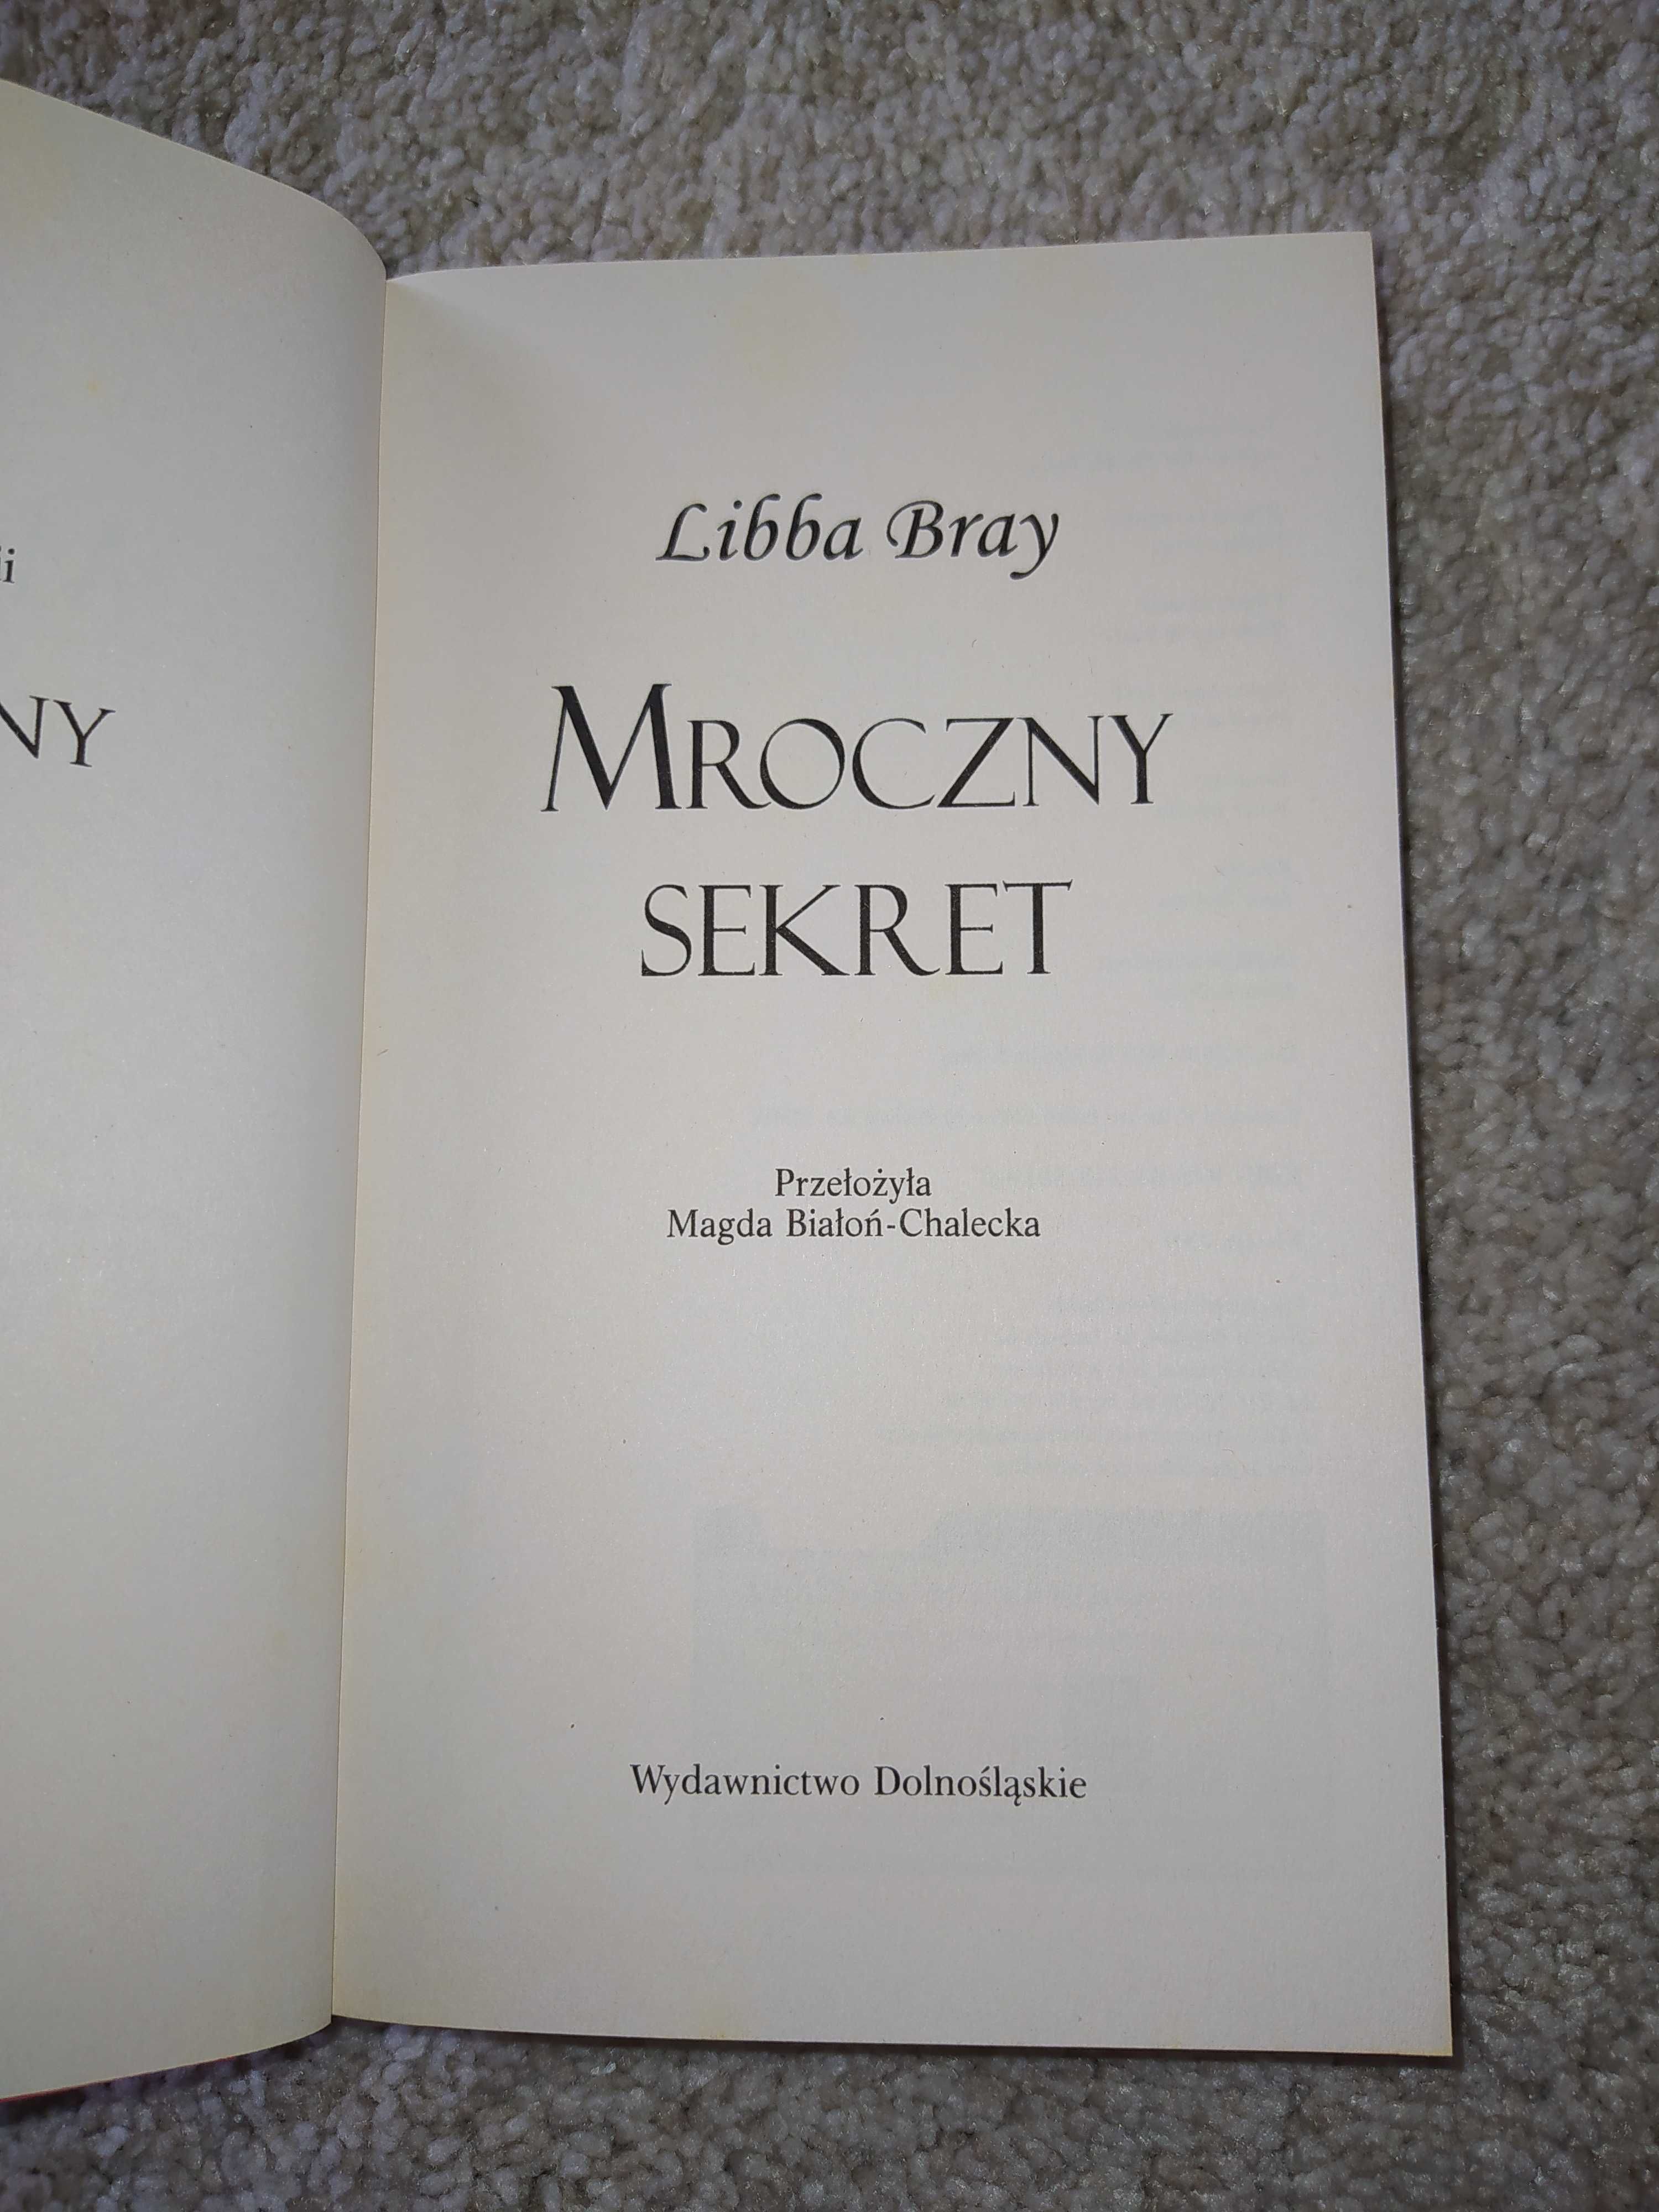 Książka "Mroczny sekret" Libba Bray BESTSELLER